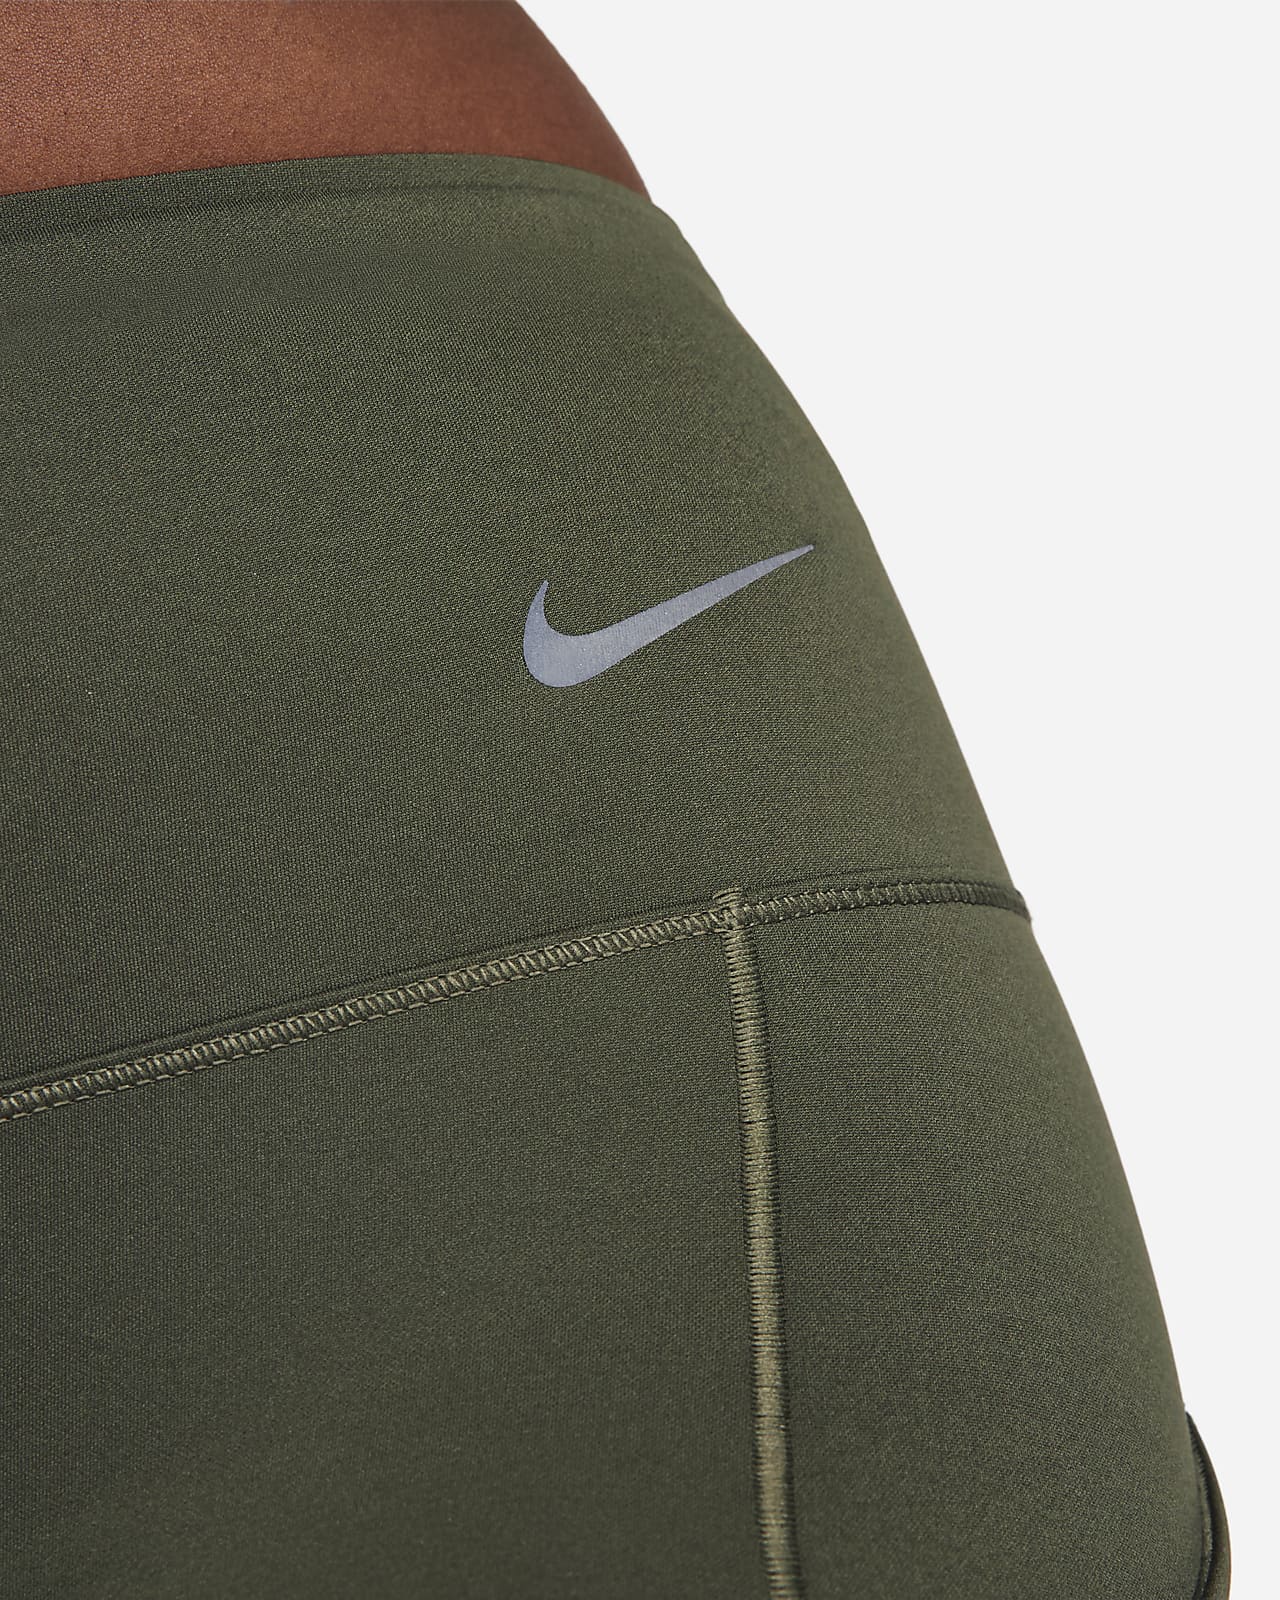 Dámské legíny Nike Go s plnou délkou, středně vysokým pasem